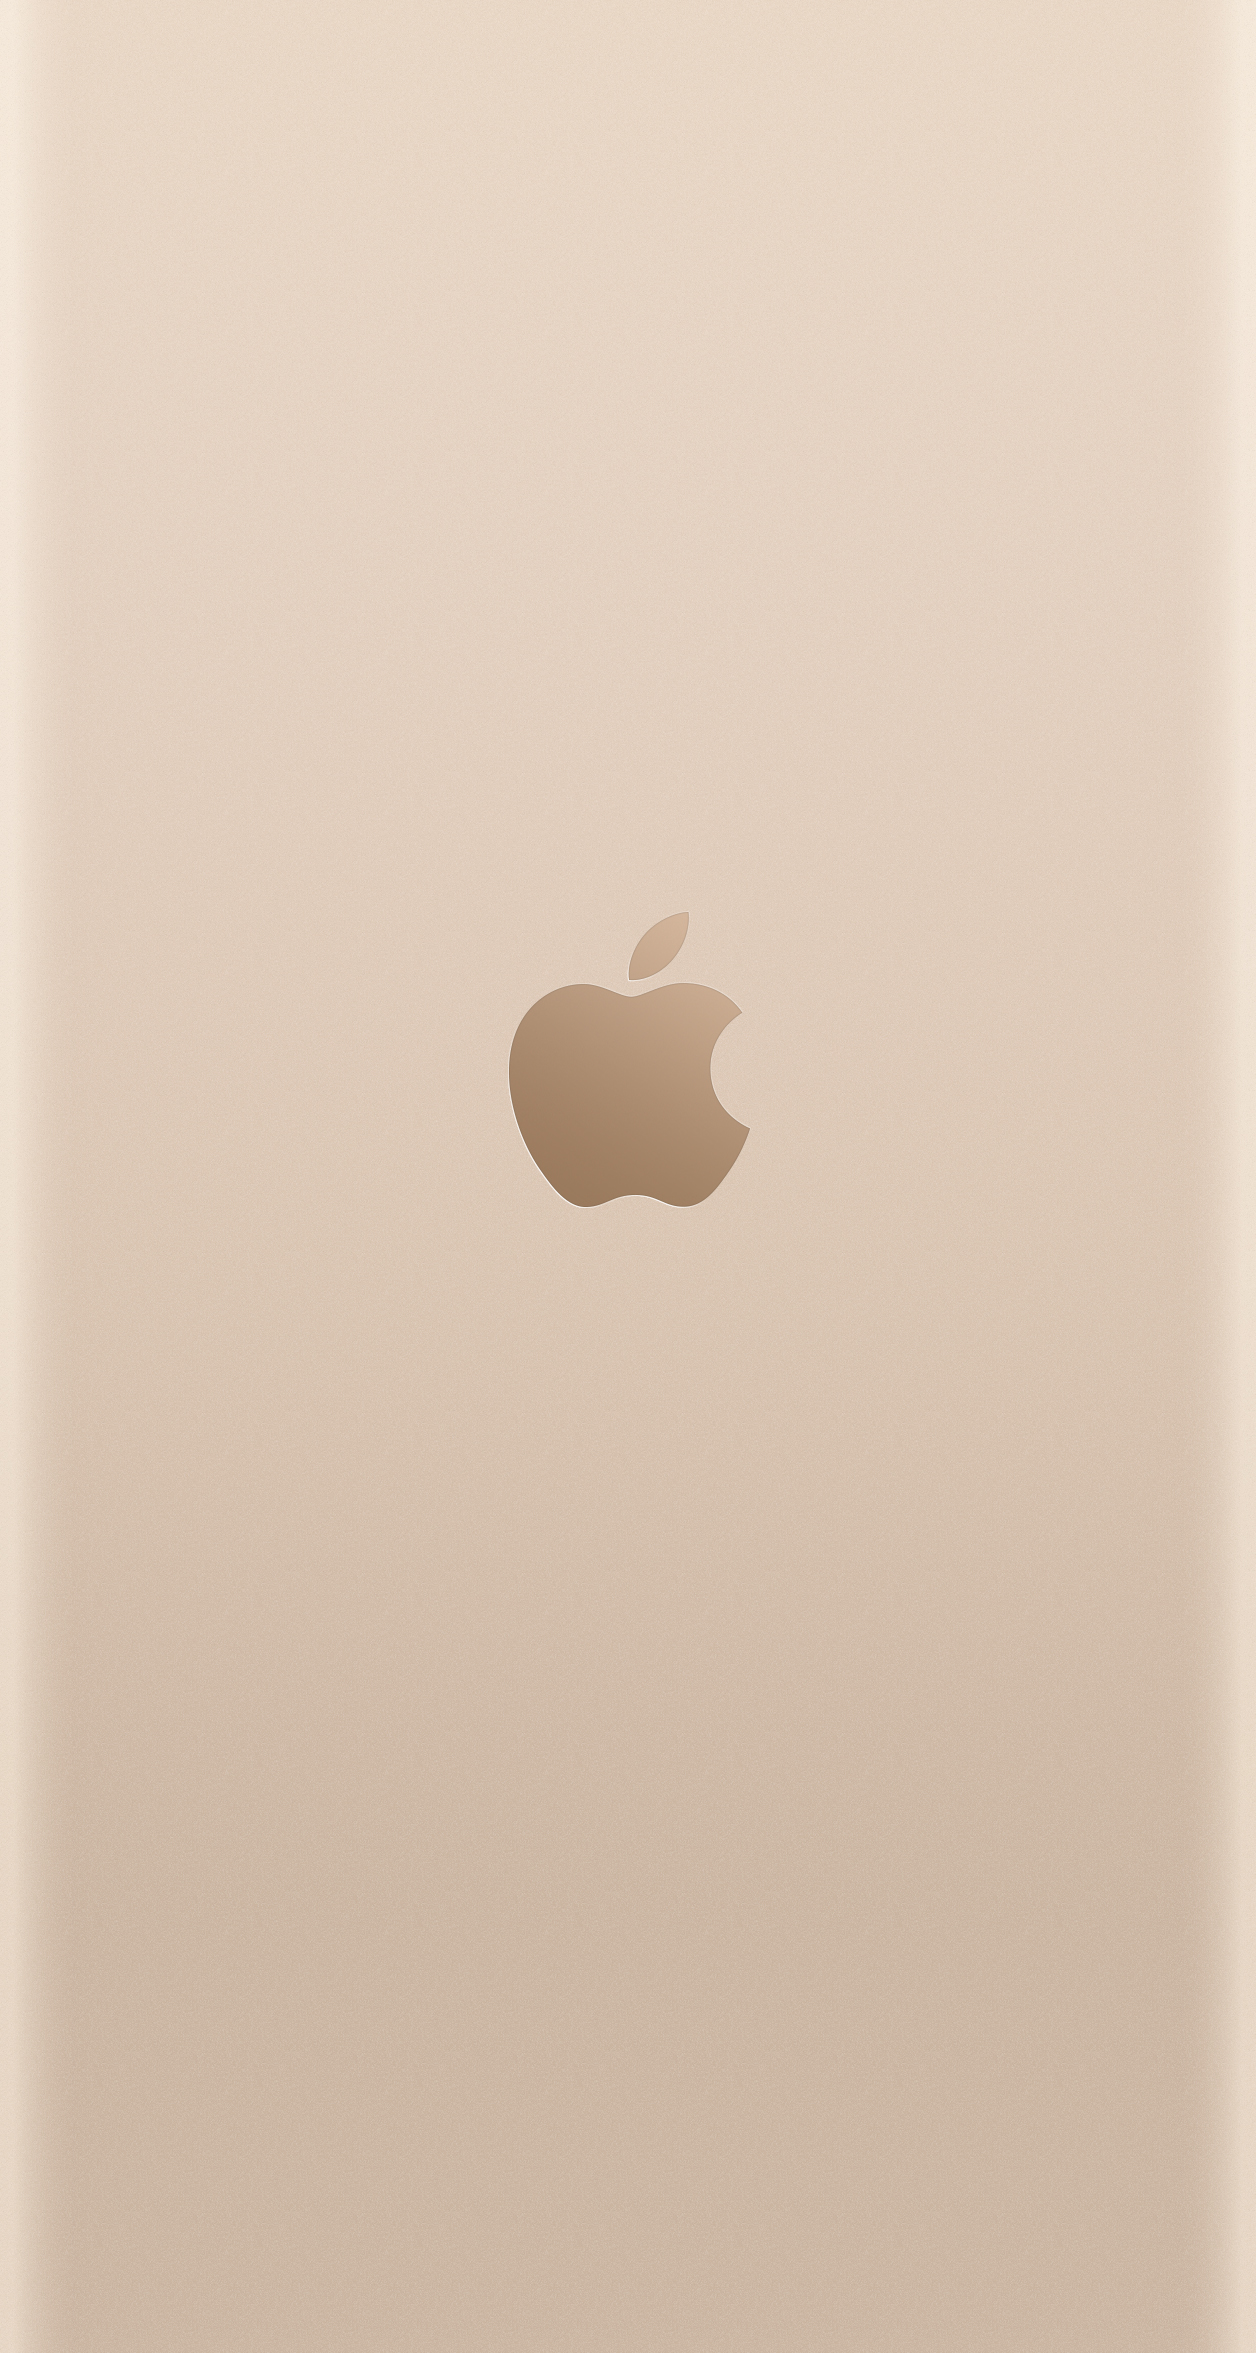 Gold iPhone 6 Plus iPhone 6 iPhone 5s